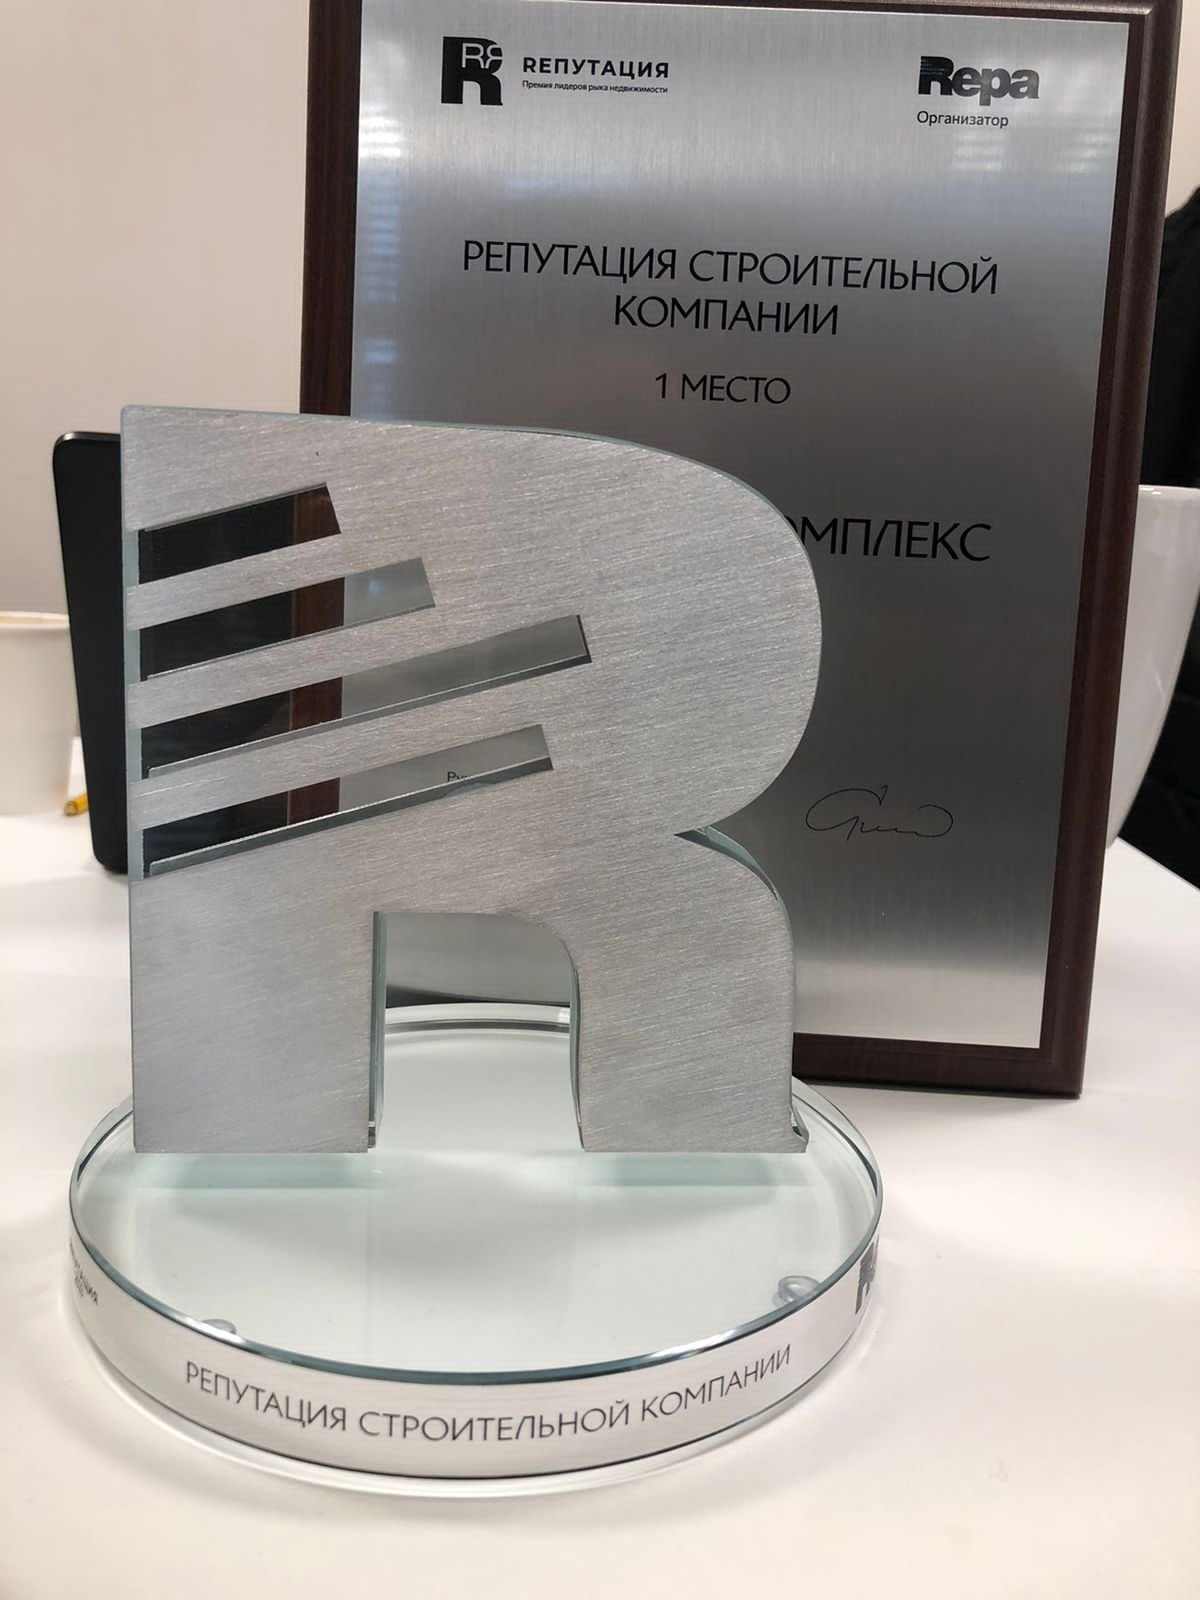 Компания «Атомстройкомплекс» получила федеральную премию «REПУТАЦИЯ» в номинации «Строительные компании»